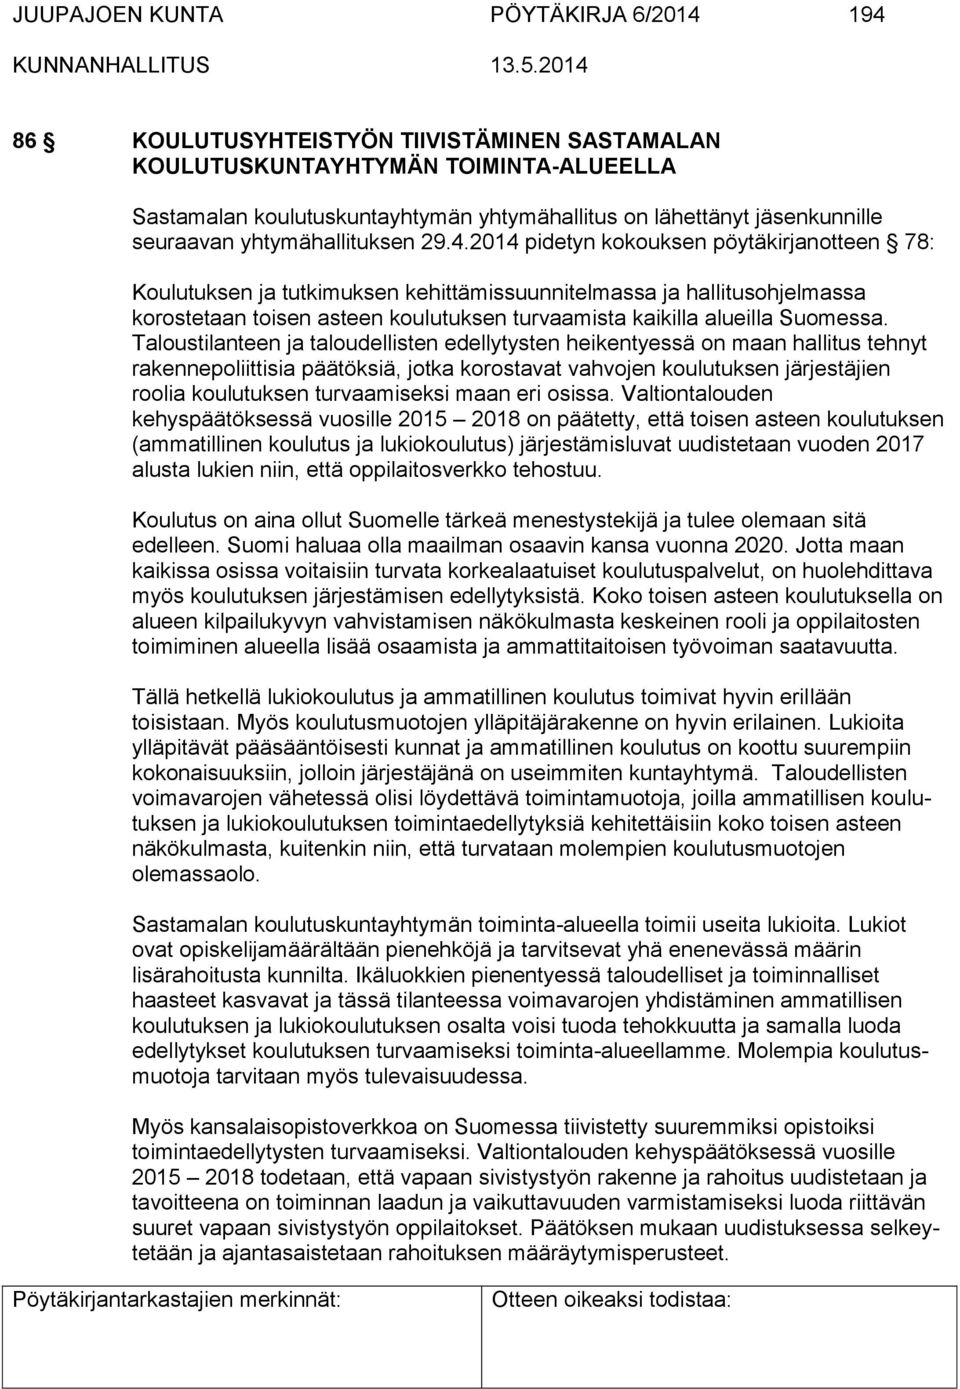 2014 pidetyn kokouksen pöytäkirjanotteen 78: Koulutuksen ja tutkimuksen kehittämissuunnitelmassa ja hallitusohjelmassa korostetaan toisen asteen koulutuksen turvaamista kaikilla alueilla Suomessa.